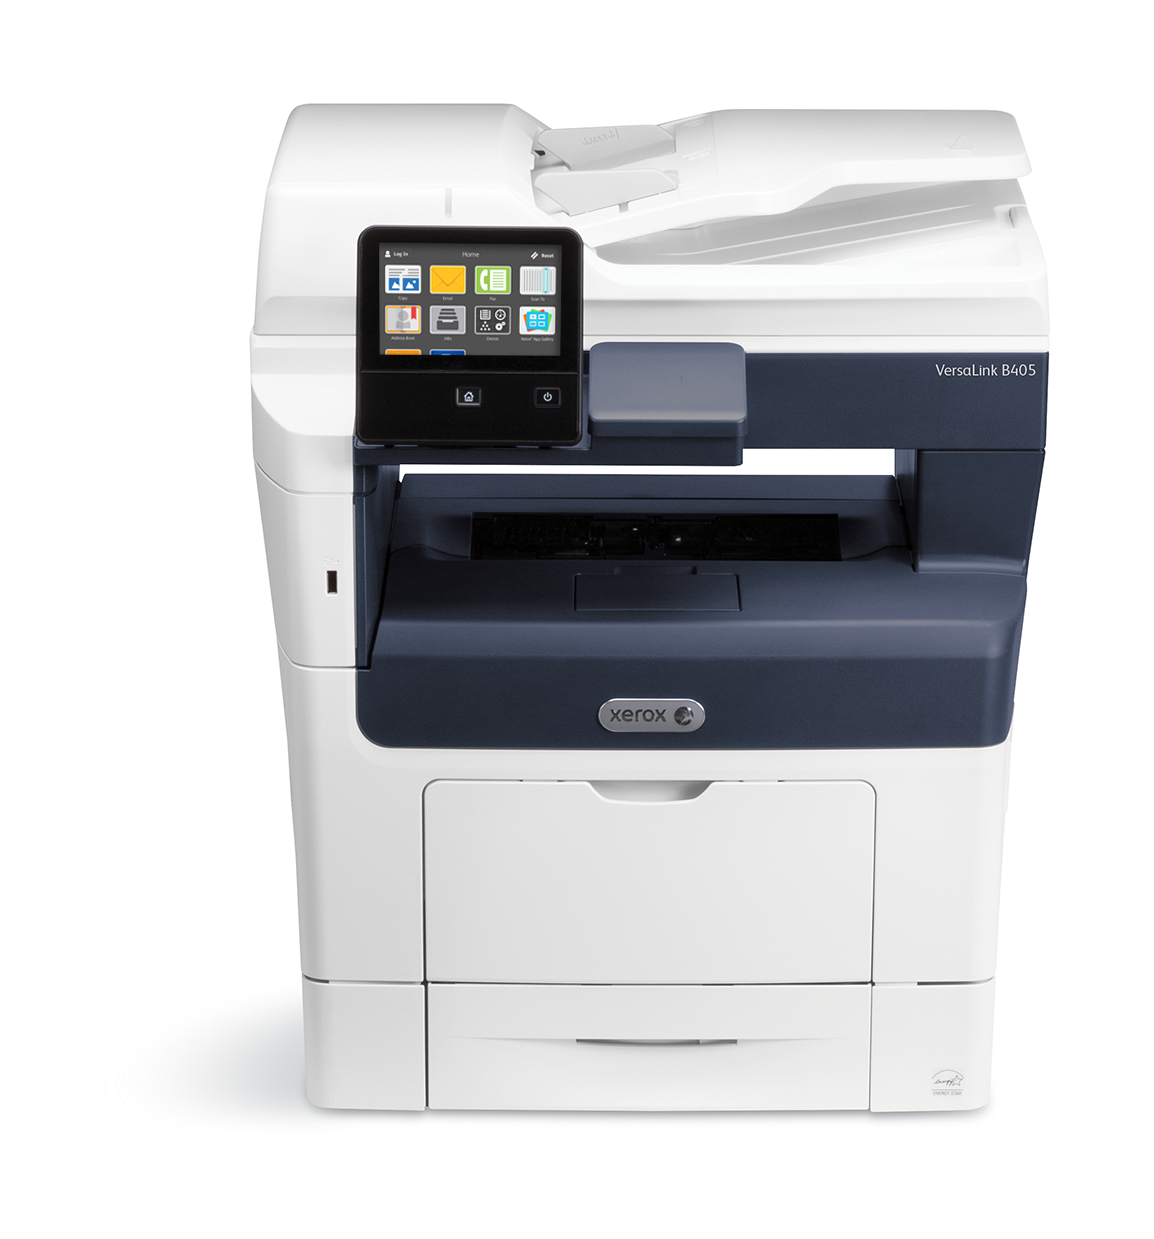 Impresora MFP VersaLink C405: nuevas formas de trabajar - Xerox